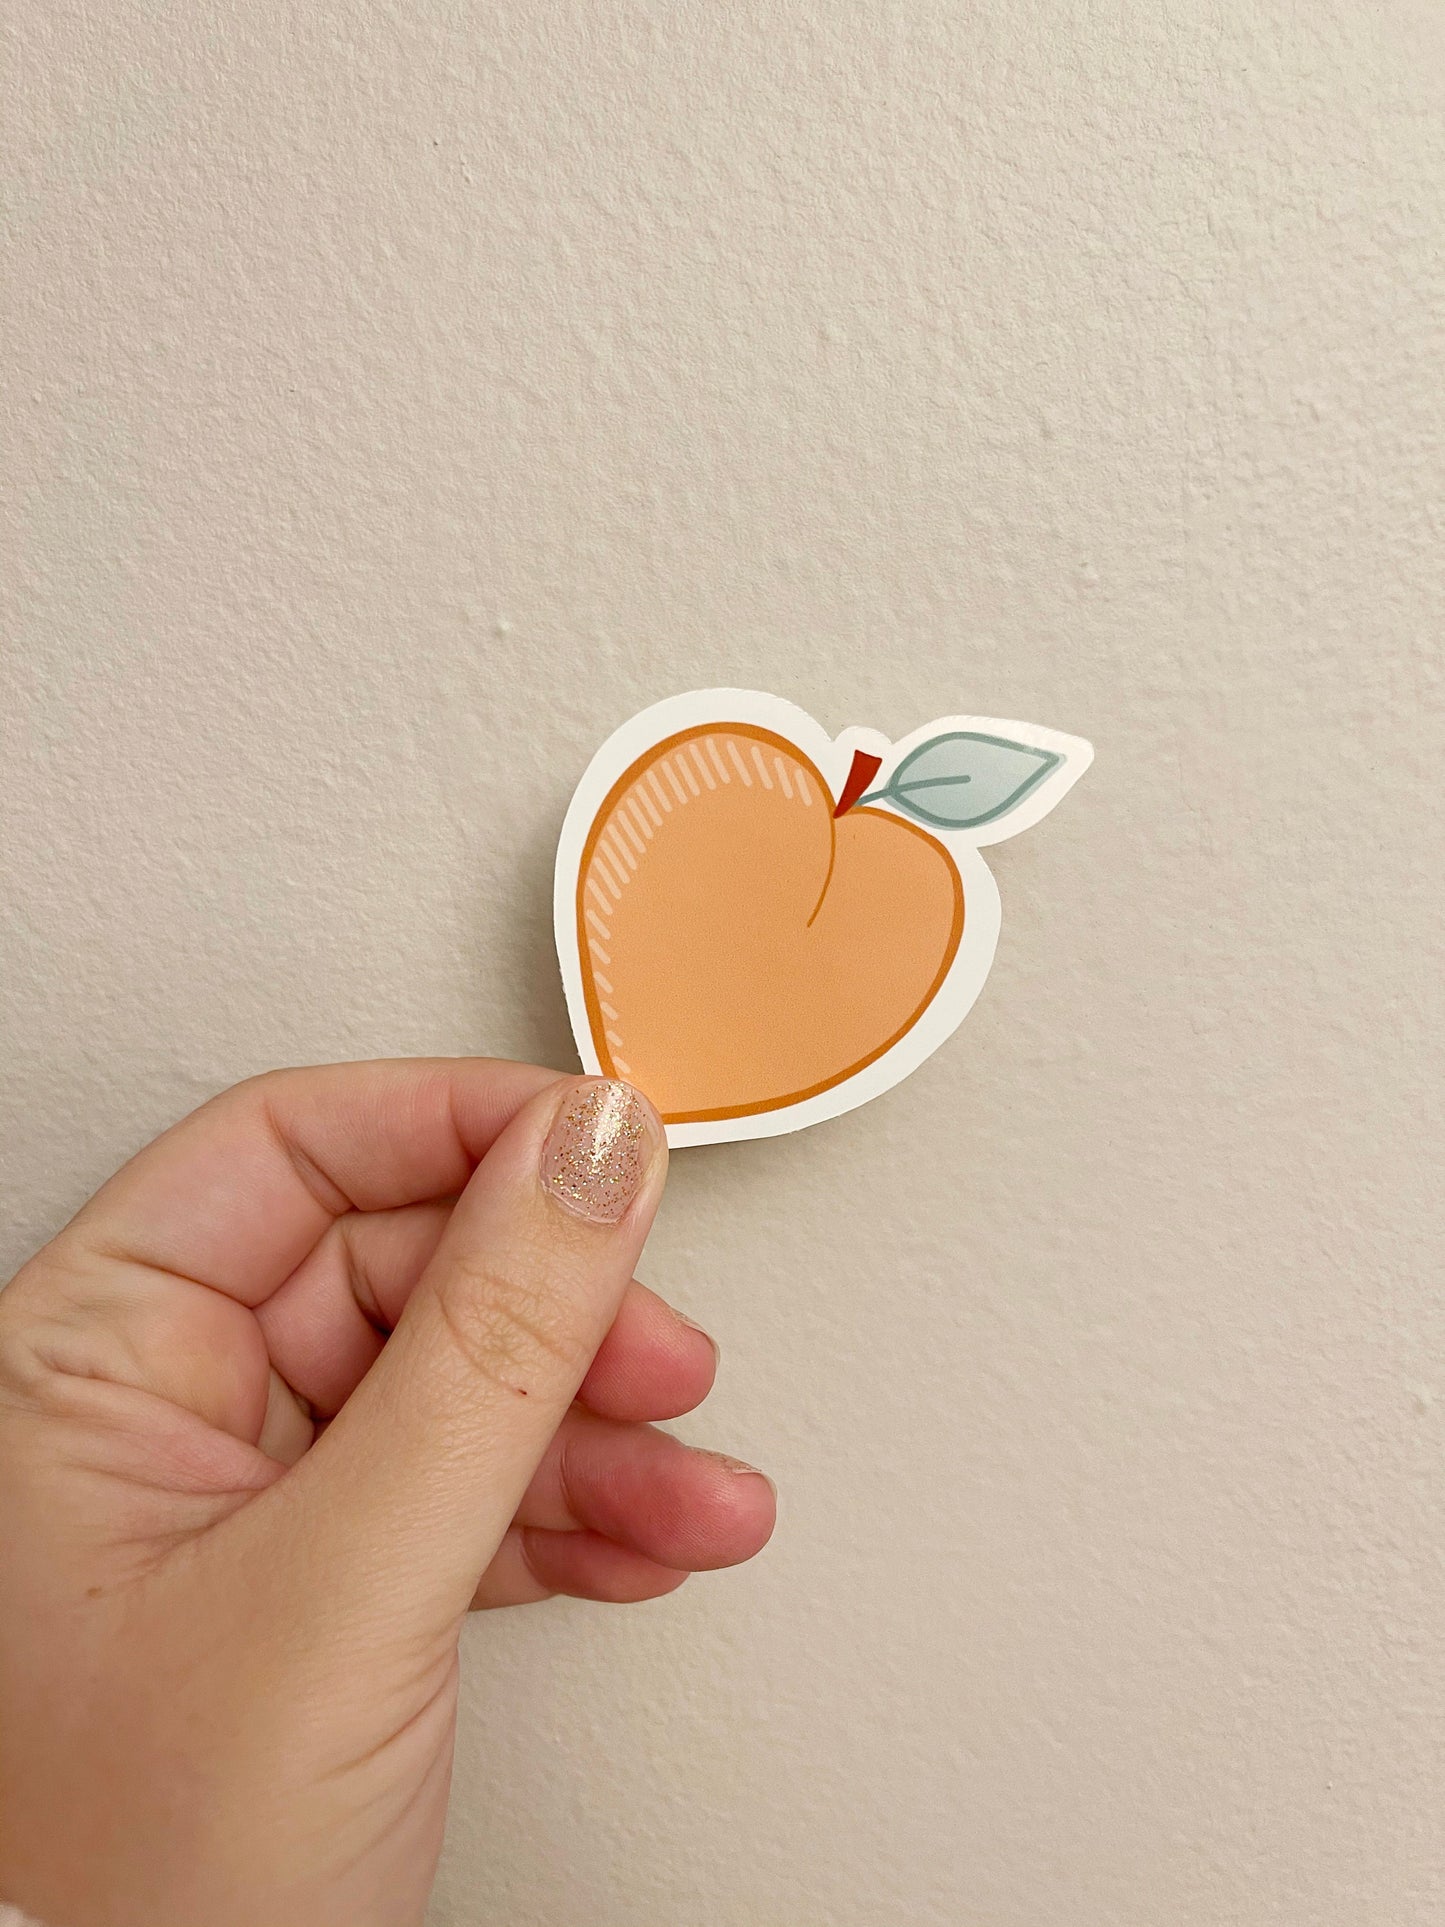 Peach Sticker, 3 inch peach sticker, vinyl sticker, Gift